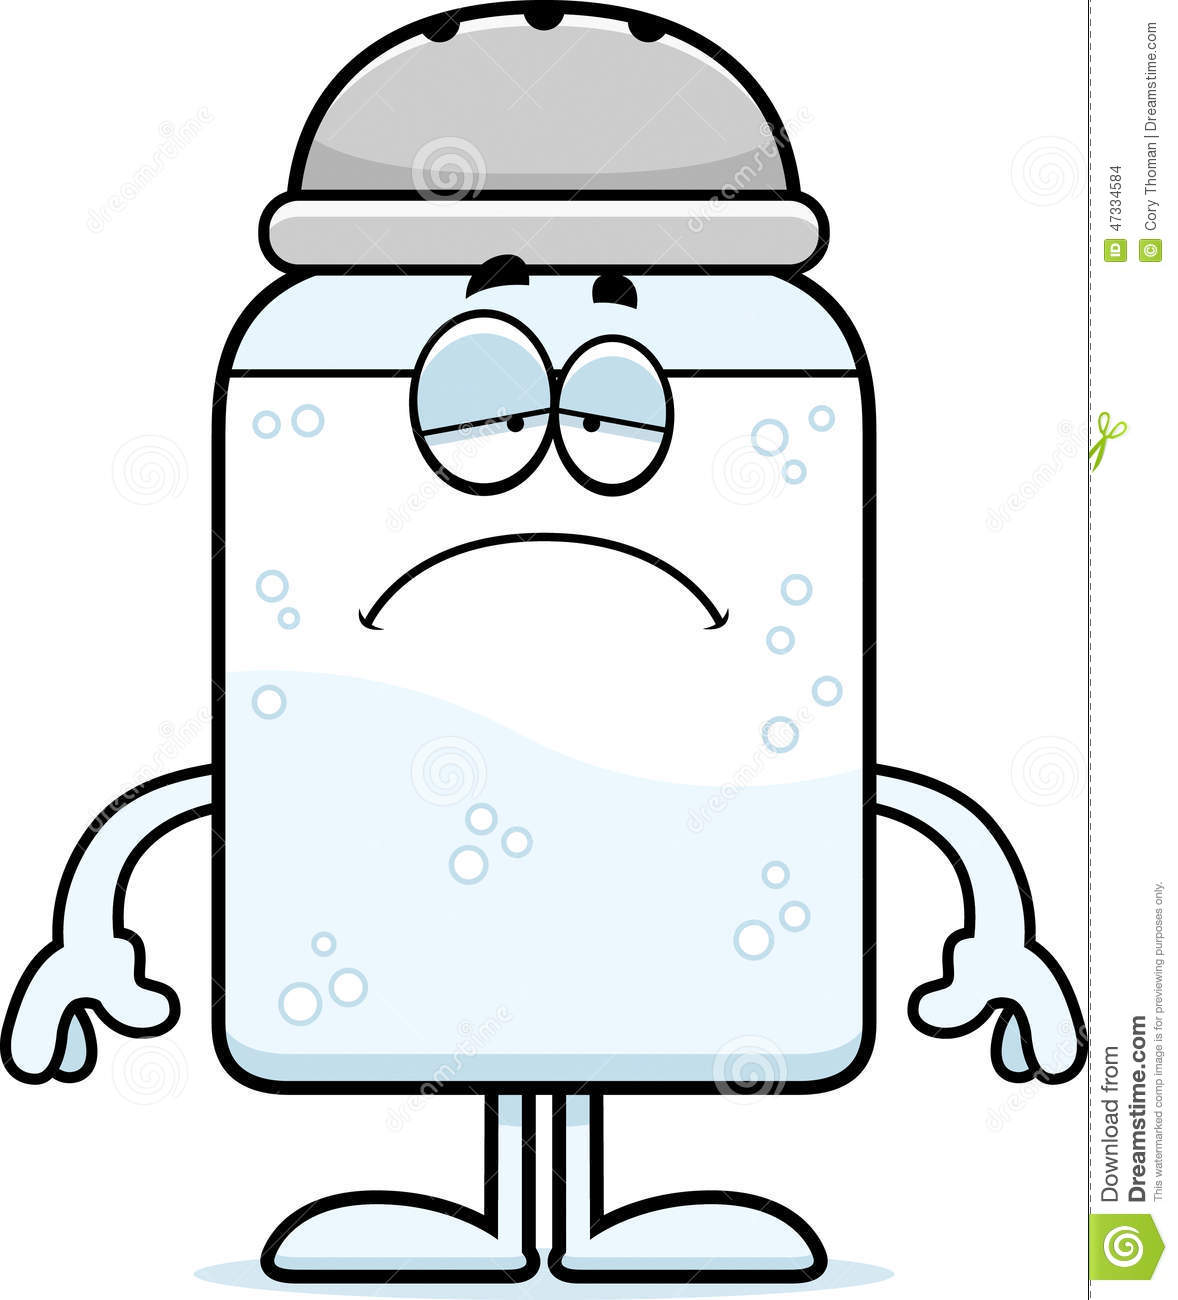 Cartoon Illustration Of A Salt Shaker Looking Sad